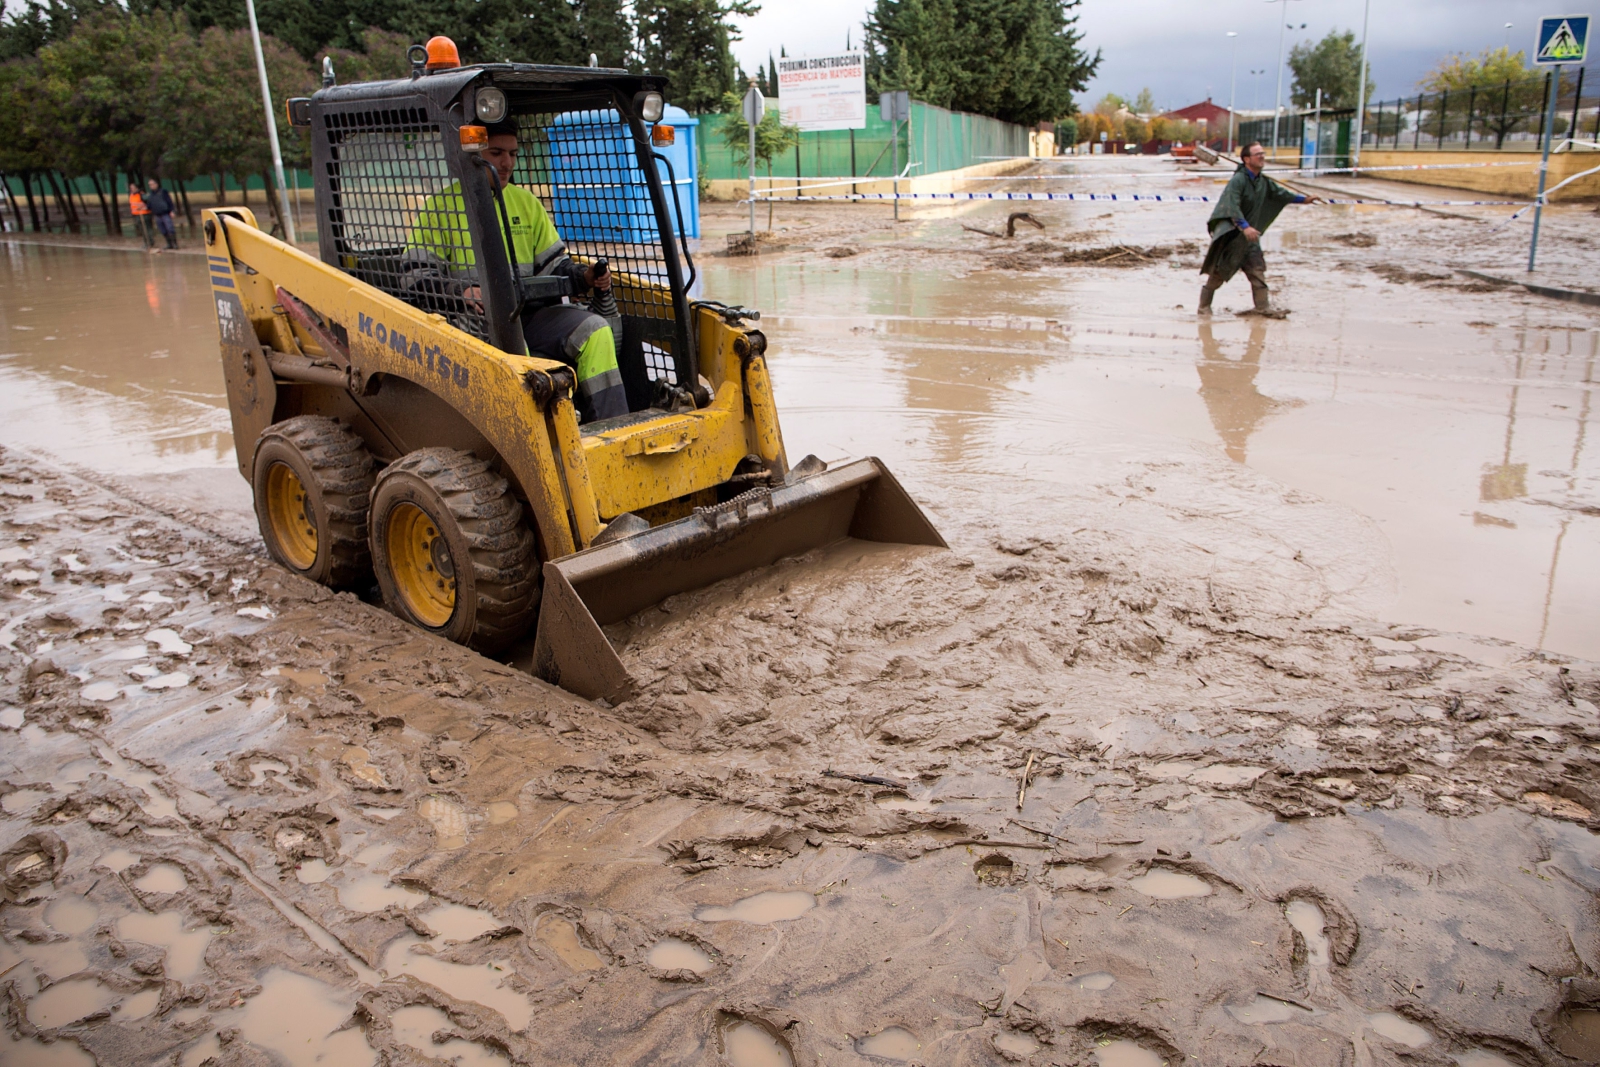 Koparki sprzątają ulice w Campillos, Hiszpania po powodziach.